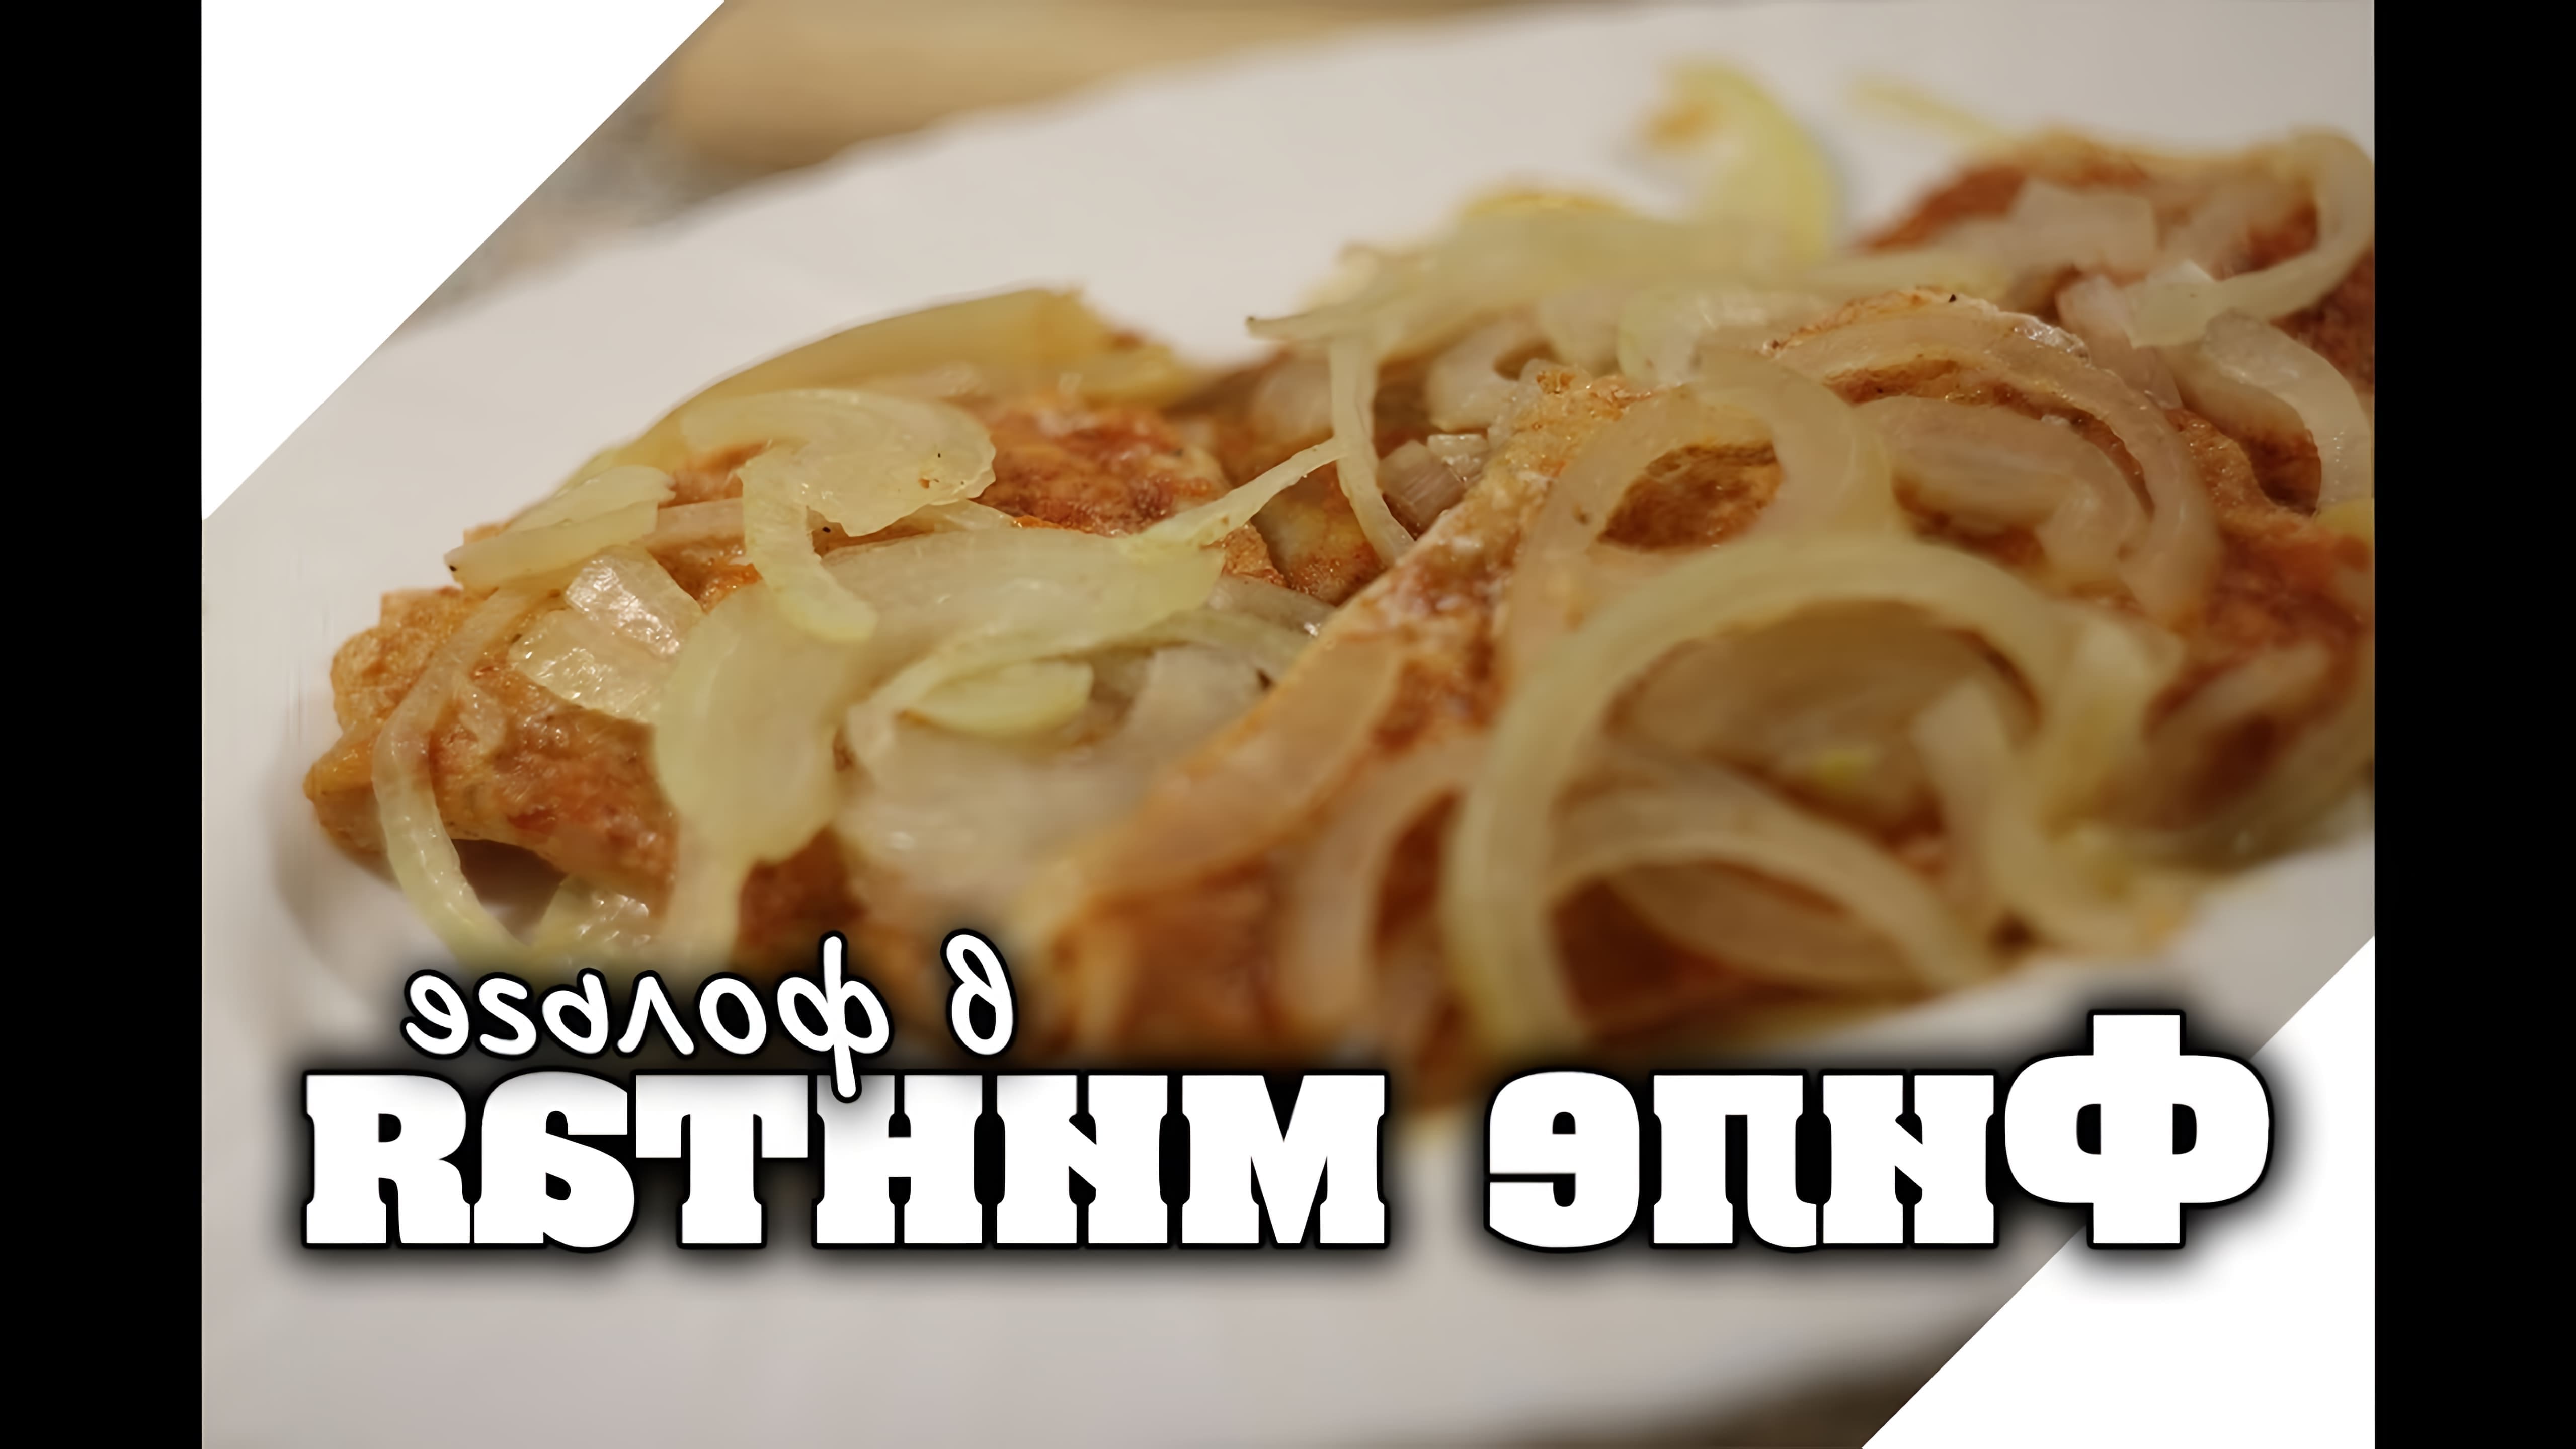 В данном видео-ролике будет продемонстрирован рецепт приготовления филе минтая в фольге в духовке